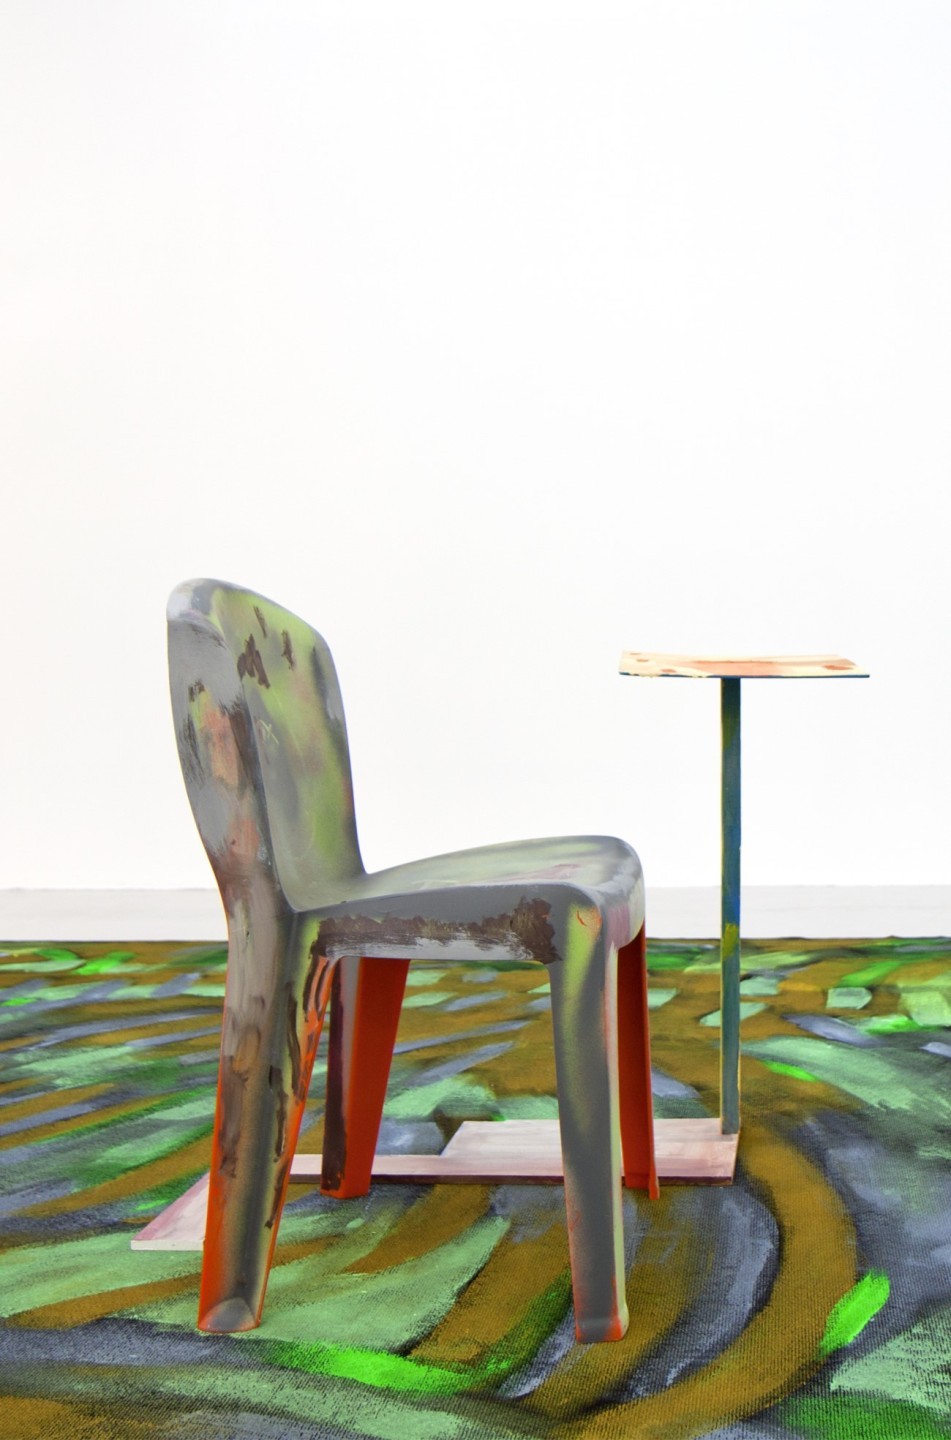 L'oeuvre est constituée d'une chaise en plastique peinte et d'une petite table en bois peinte également.